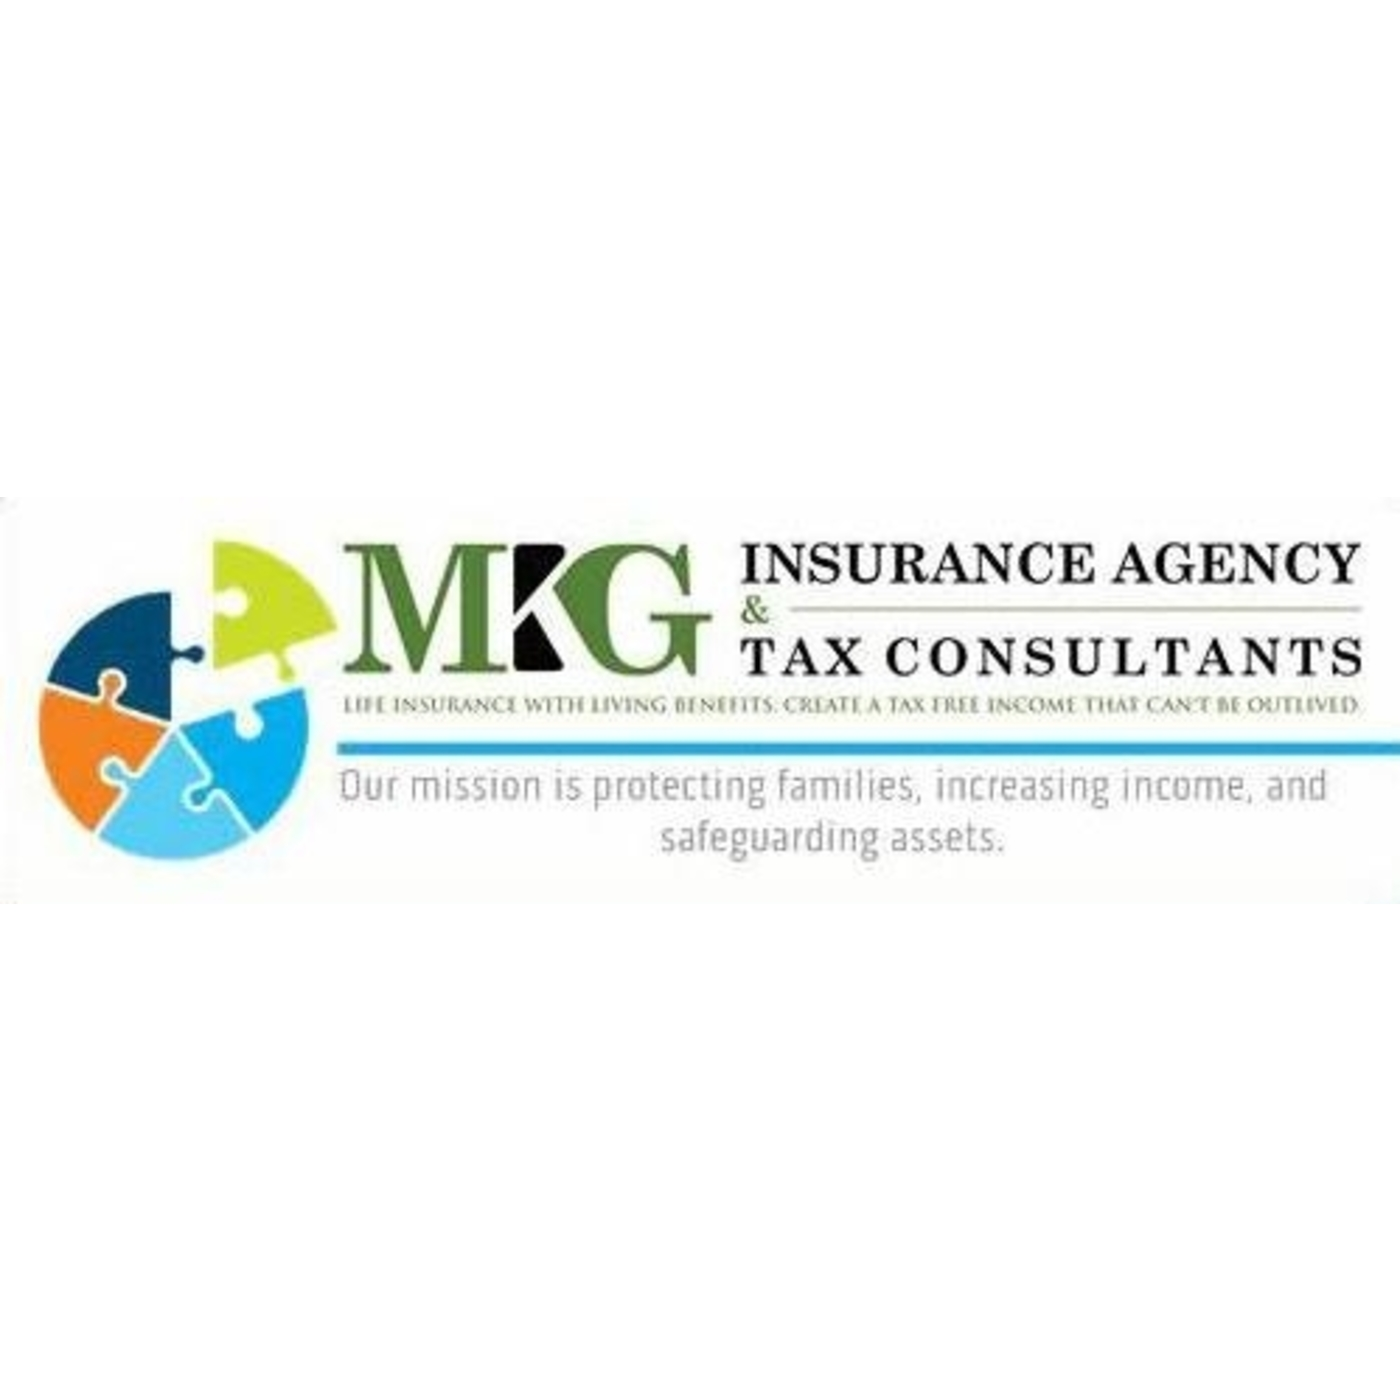 MKG Insurance Agency